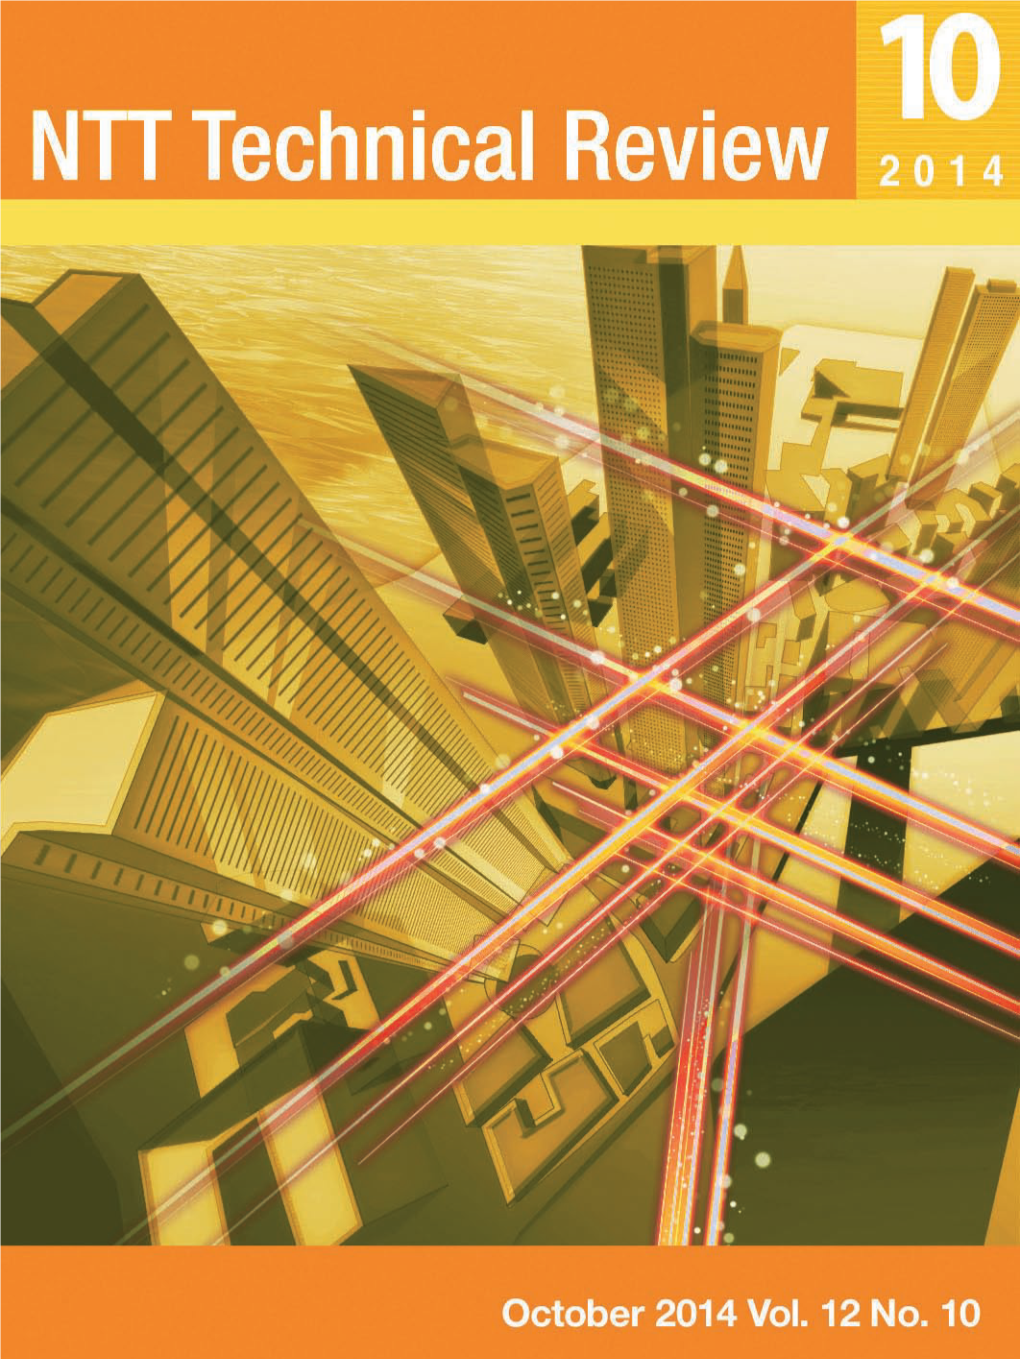 NTT Technical Review, Oct. 2014, Vol. 12, No. 10